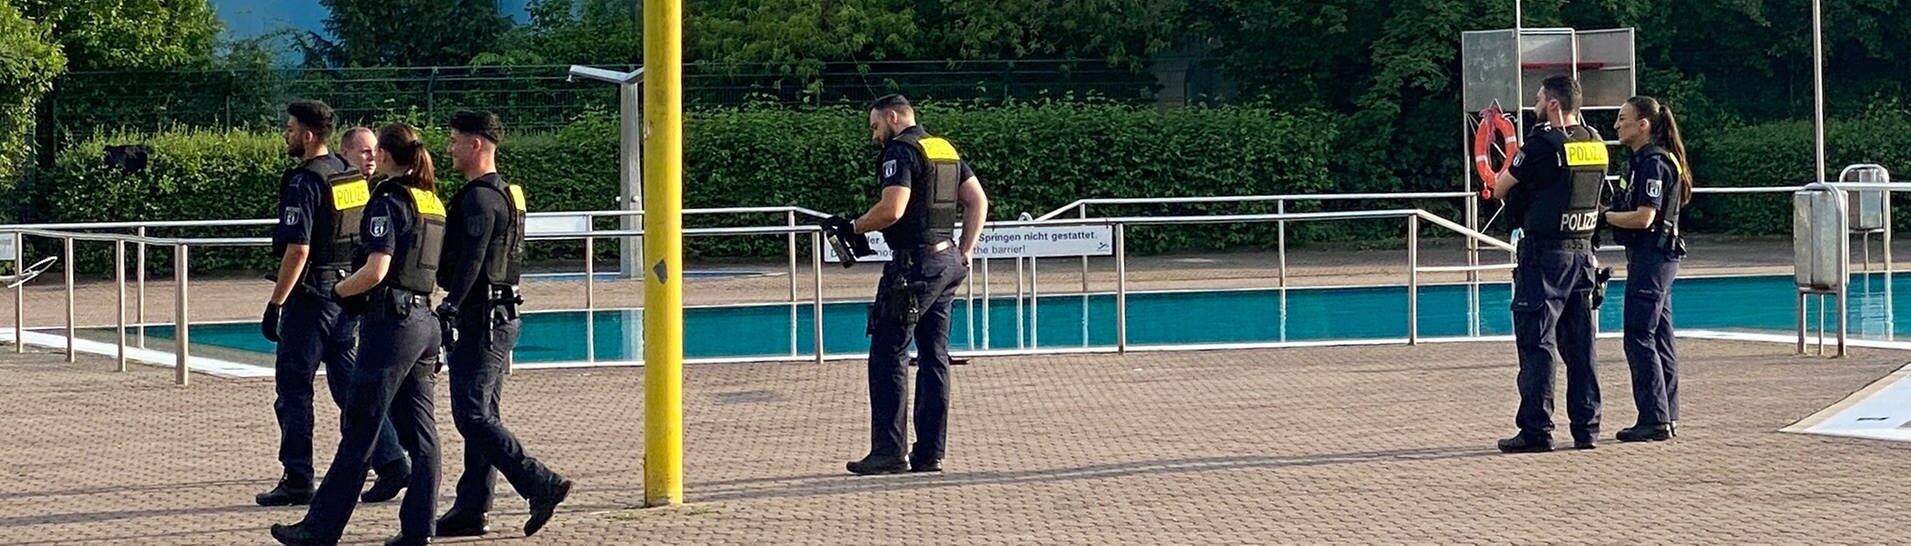 Polizisten stehen vor dem Schwimmbecken: Das Sommerbad Neukölln am Columbiadamm wurde am Mittwochabend von Polizisten geräumt.  (Foto: dpa Bildfunk, picture alliance/dpa | Andreas Rabenstein)